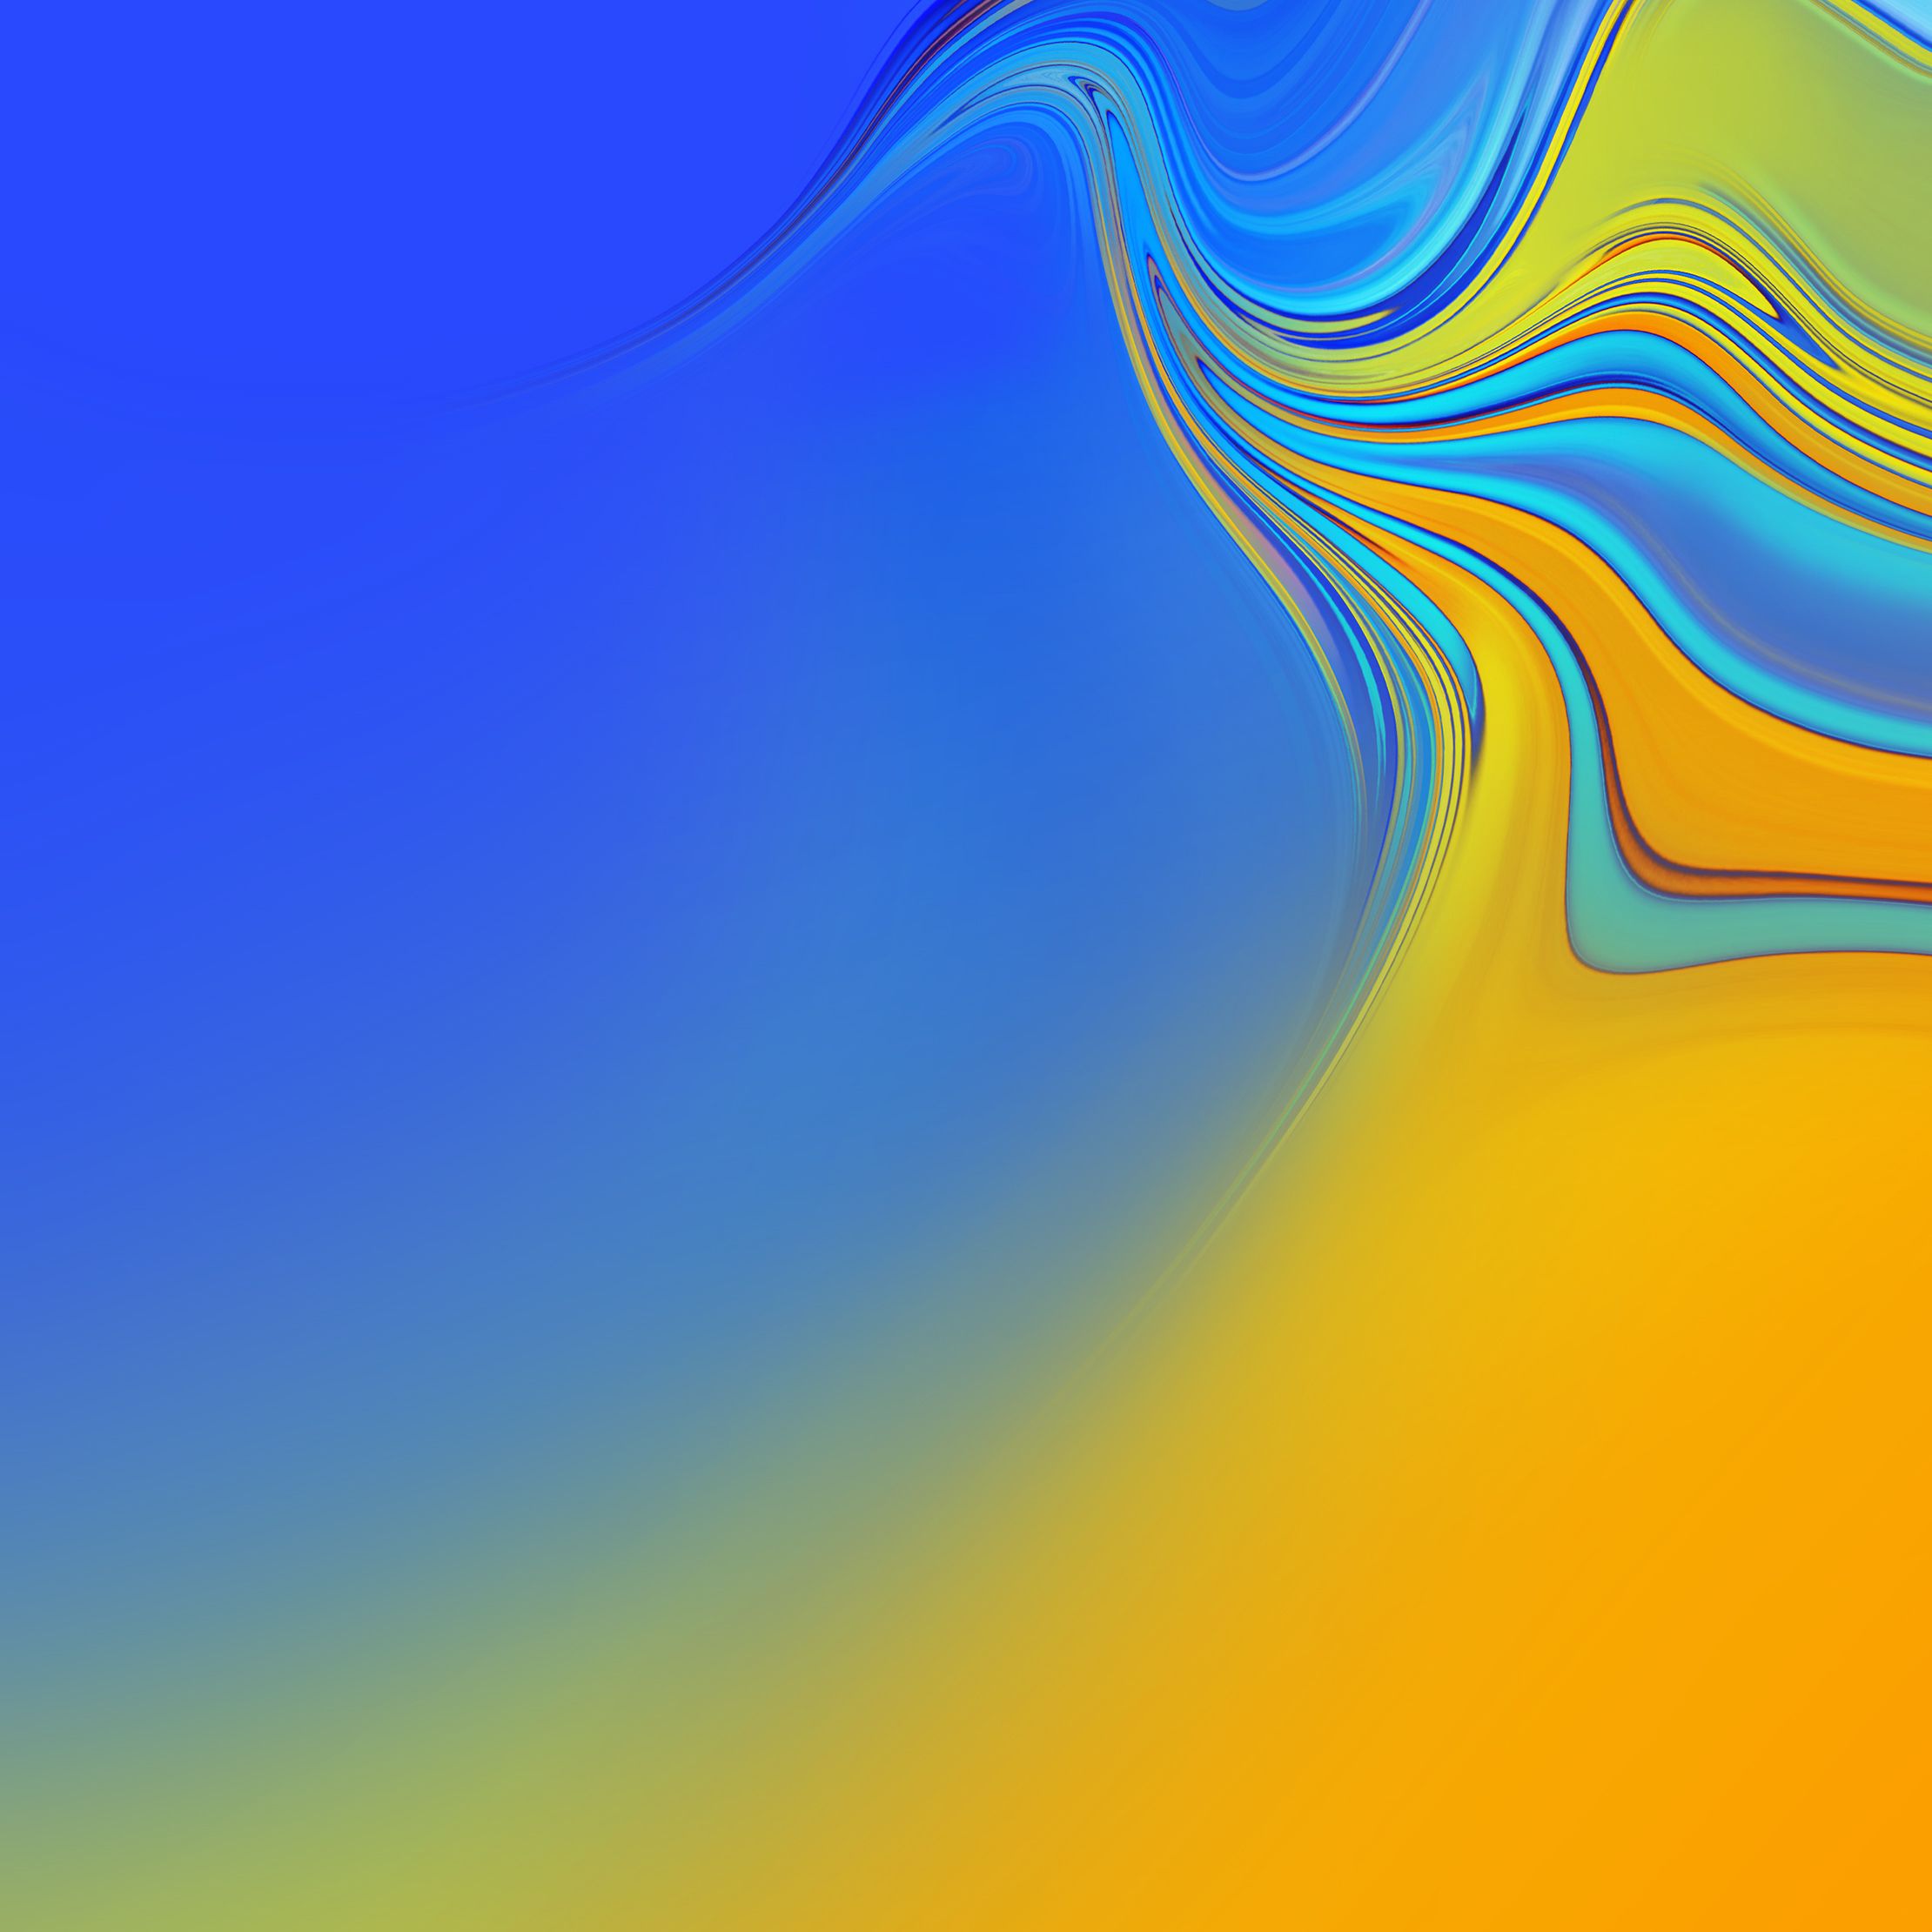 fond d'écran samsung a7,bleu,jaune,orange,ciel,ligne